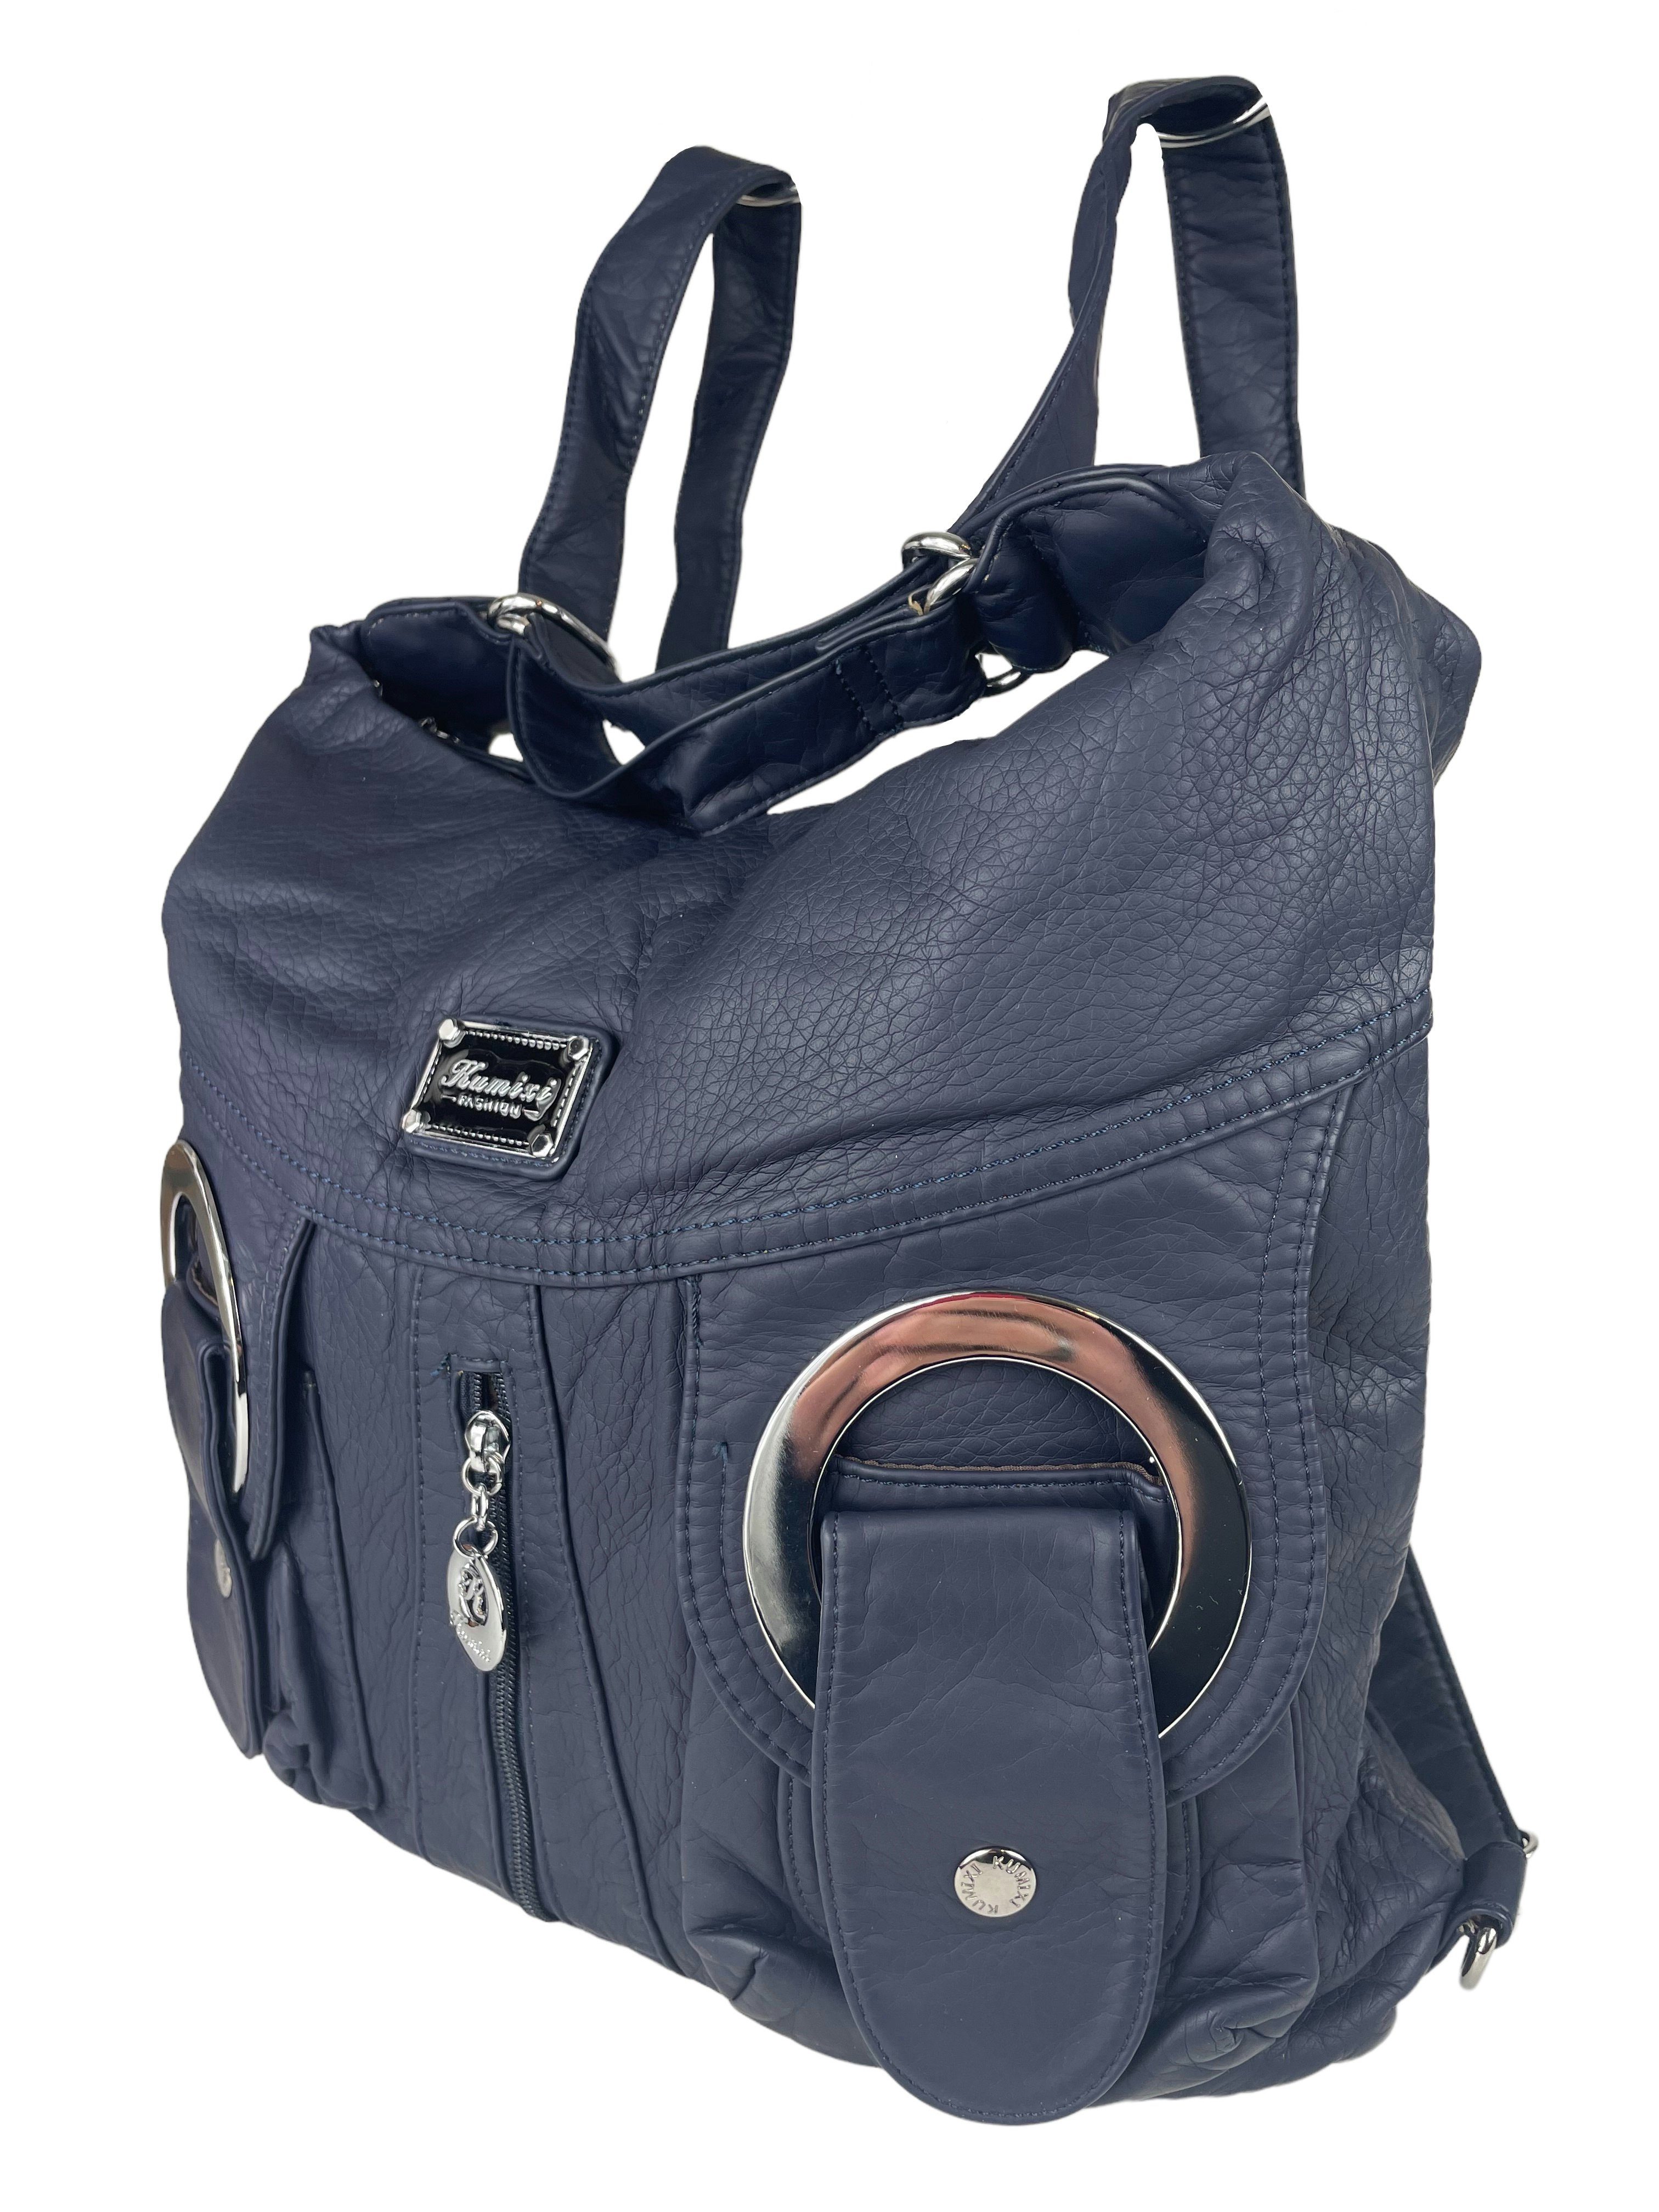 Taschen4life Schultertasche Rucksacktasche W6802 Multifunktionstasche, Tasche oder Rucksack, verstellbarer Schulterriemen, als Schultertasche oder Rucksack tragbar marine